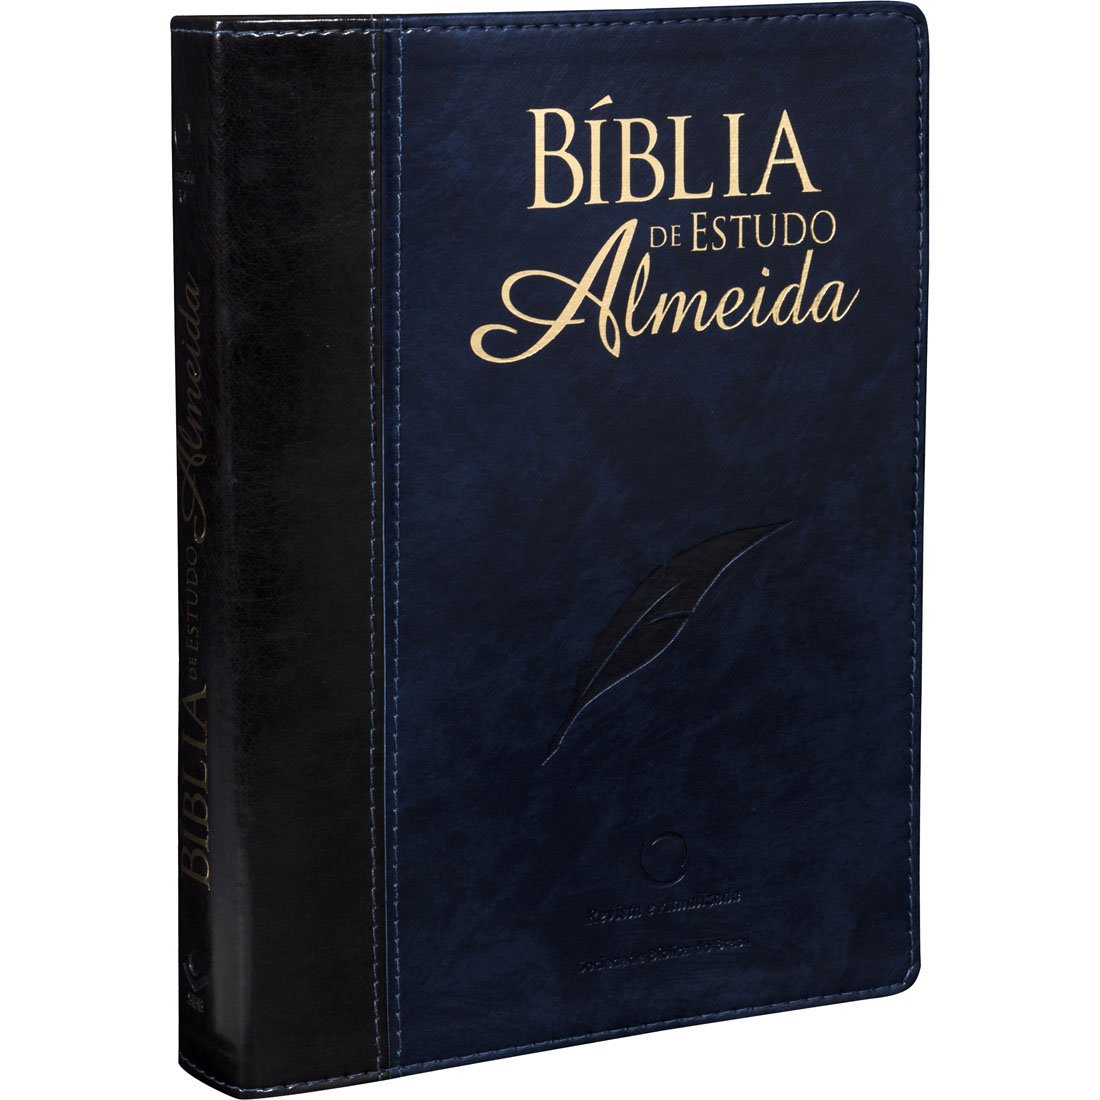 Bíblia de Estudo Almeida - Capa Azul Nobre